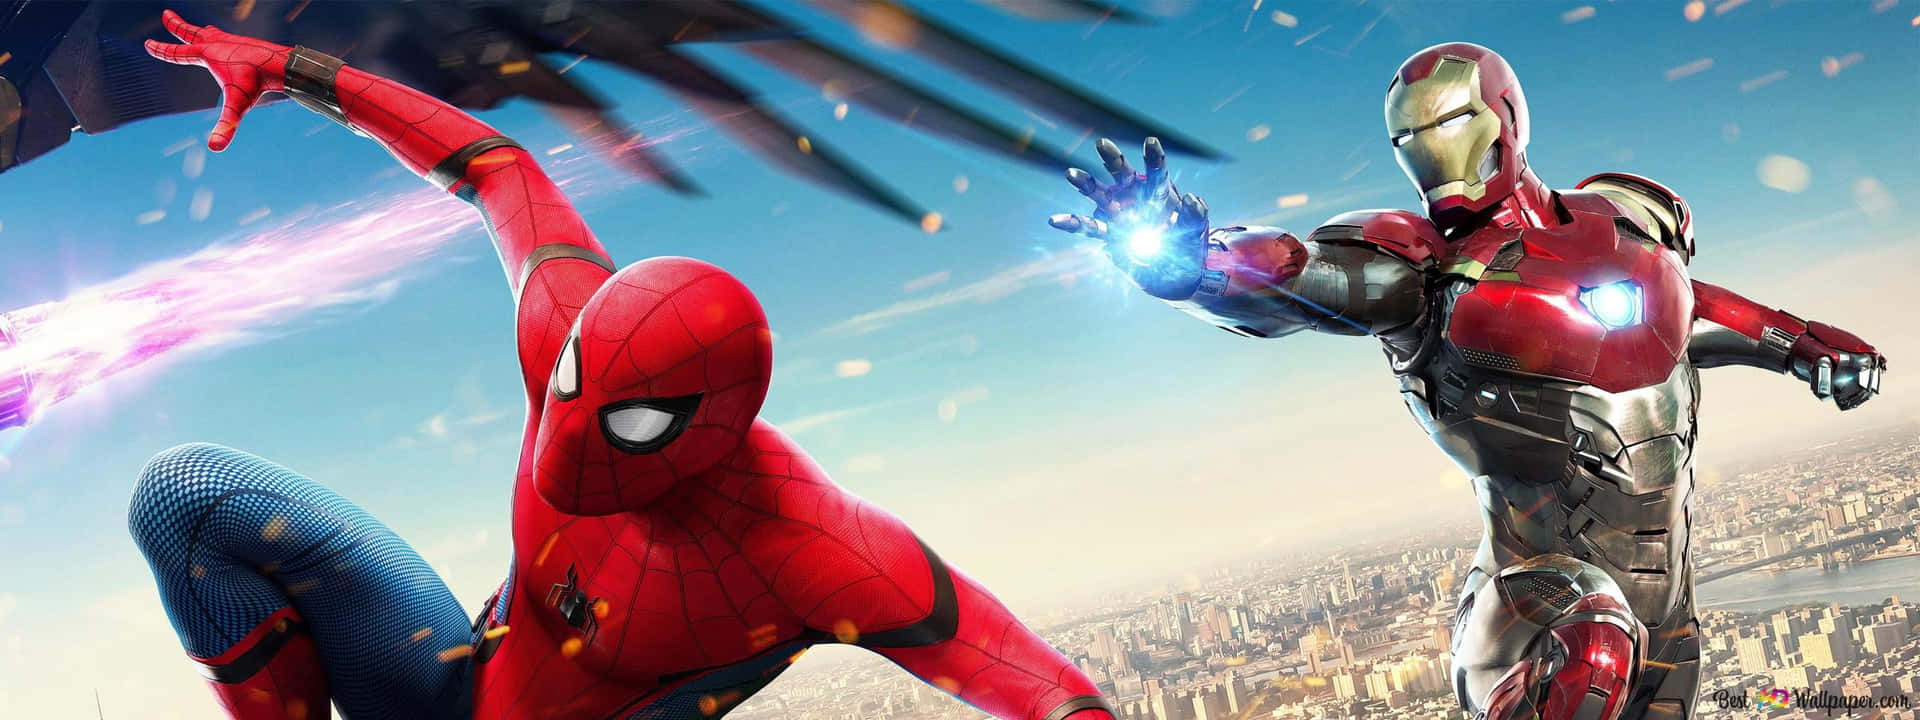 Diemarvel-superhelden Spider Man Und Iron Man Schließen Sich Zusammen, Um Den Tag Zu Retten. Wallpaper